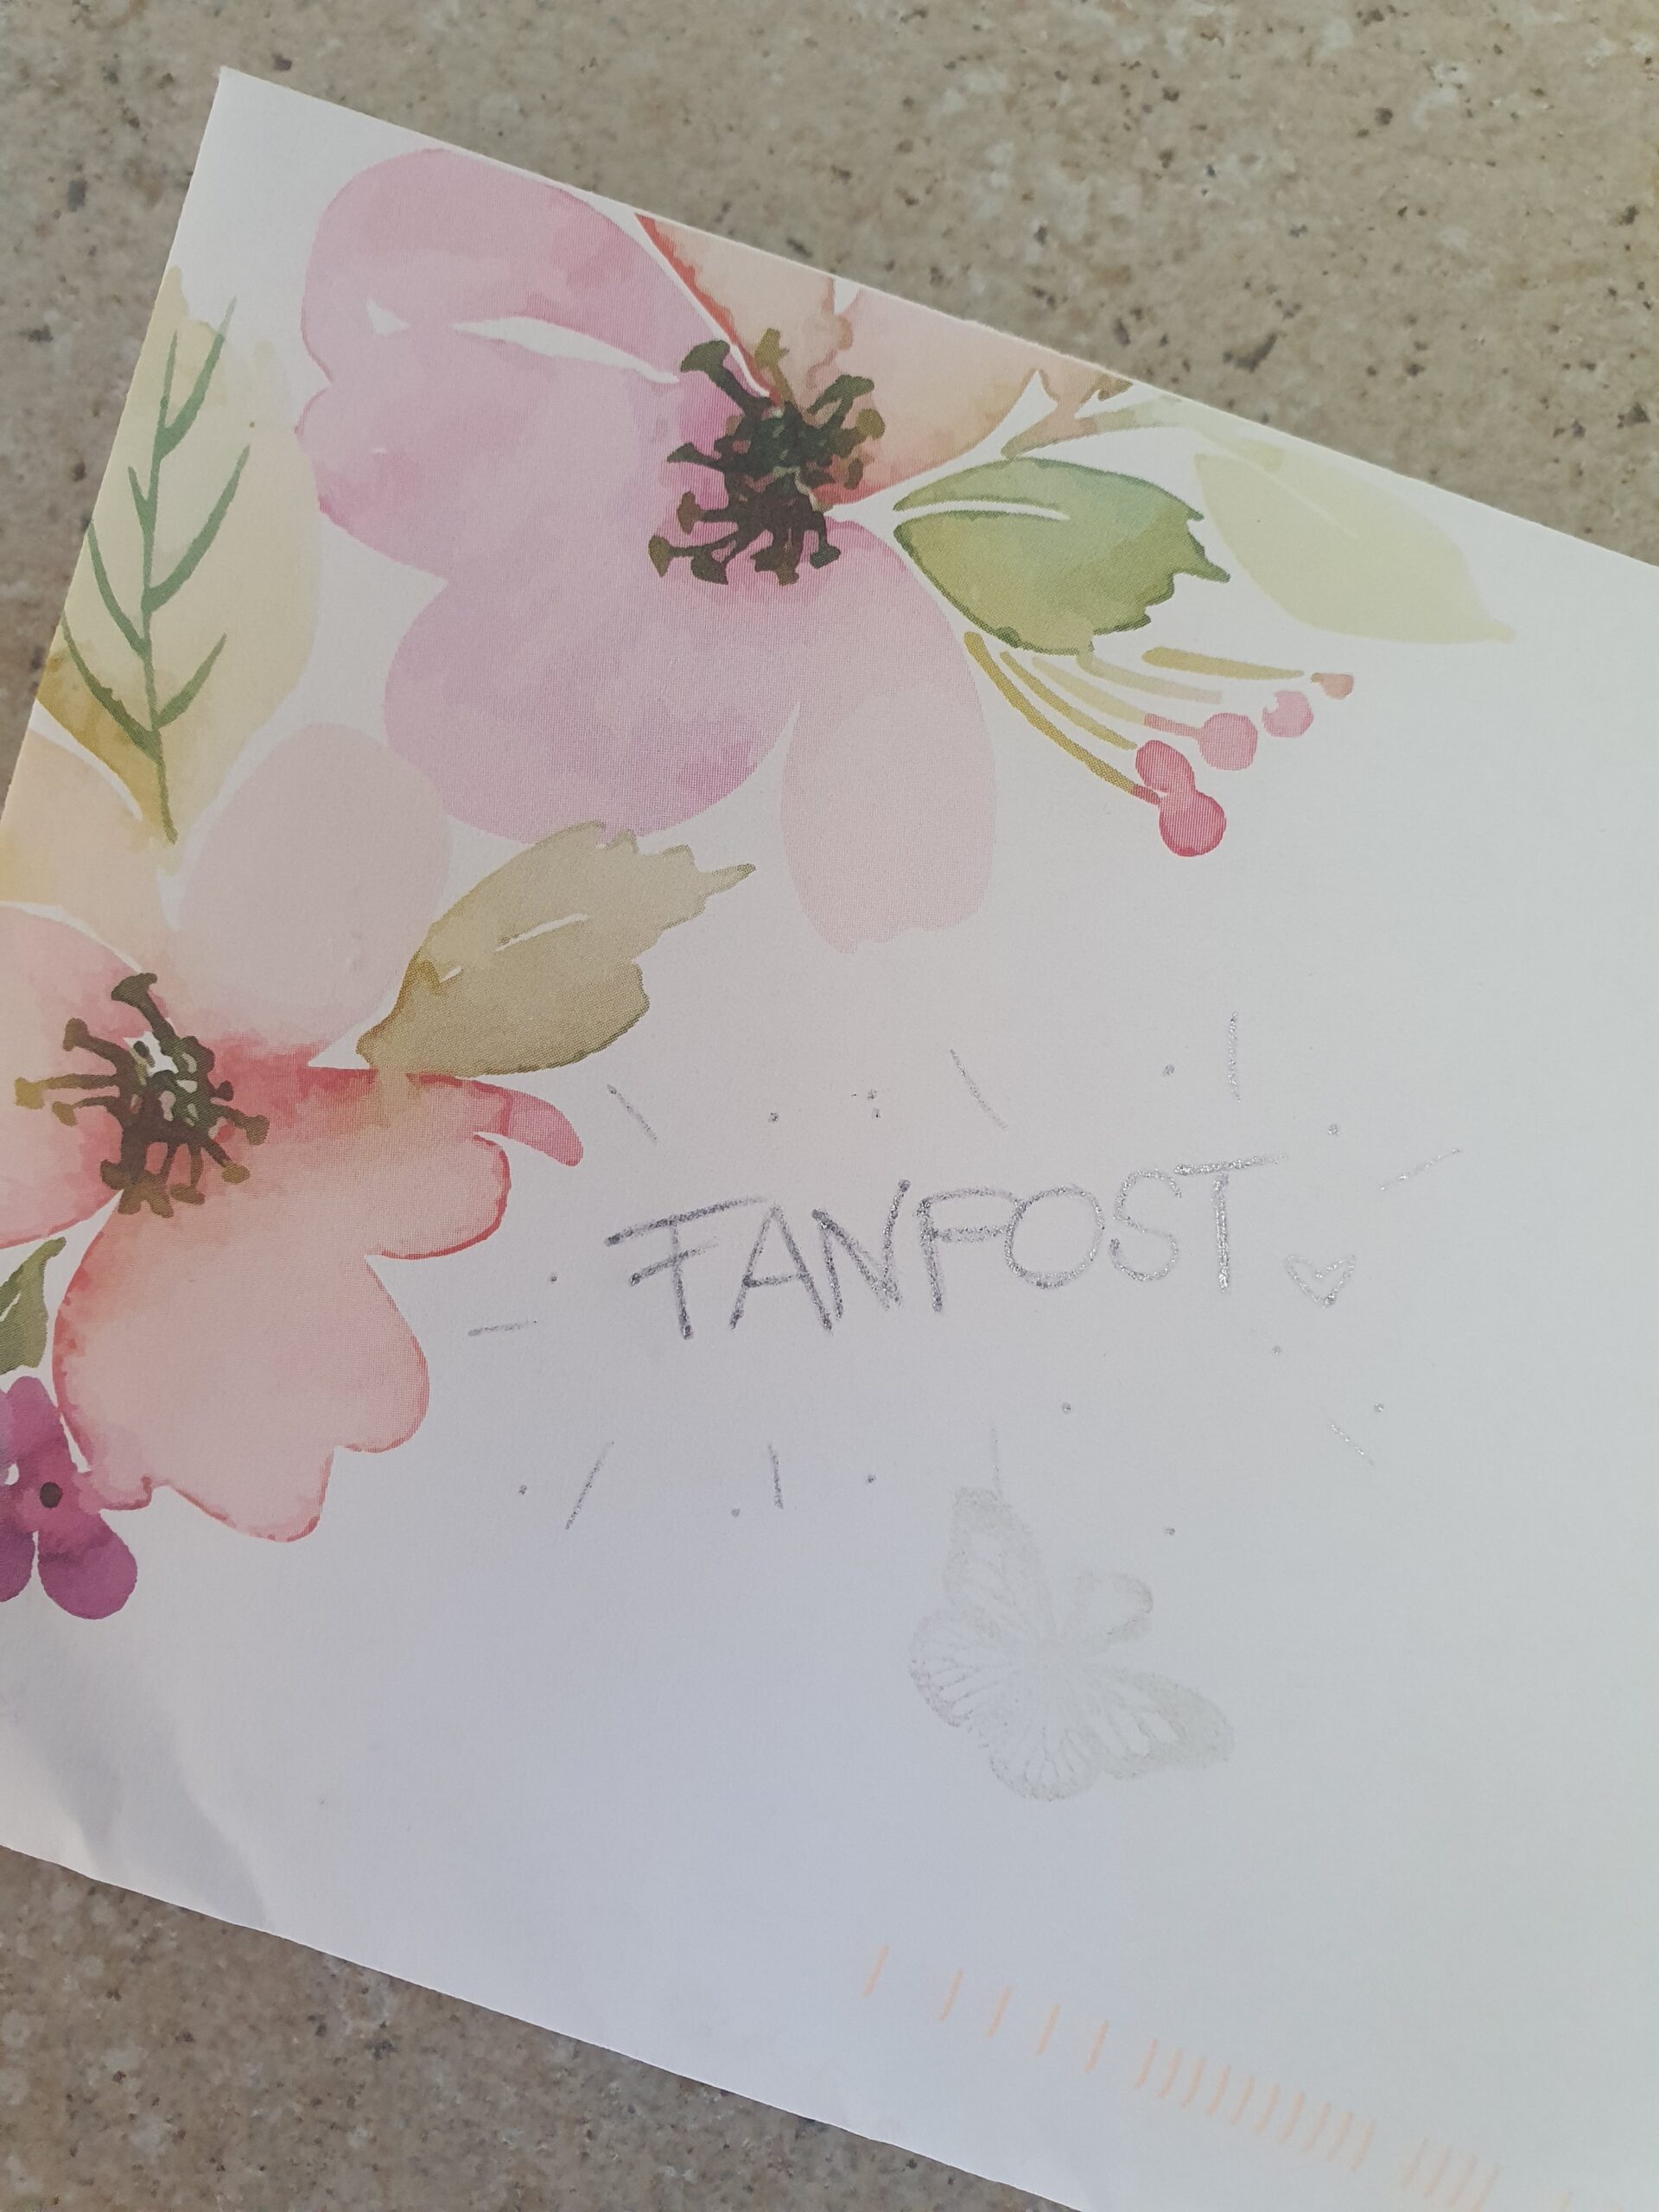 Briefumschlag mit farbigen Blumen in der Ecke und einem gezeichneten Schmetterling. Text: Fanpost